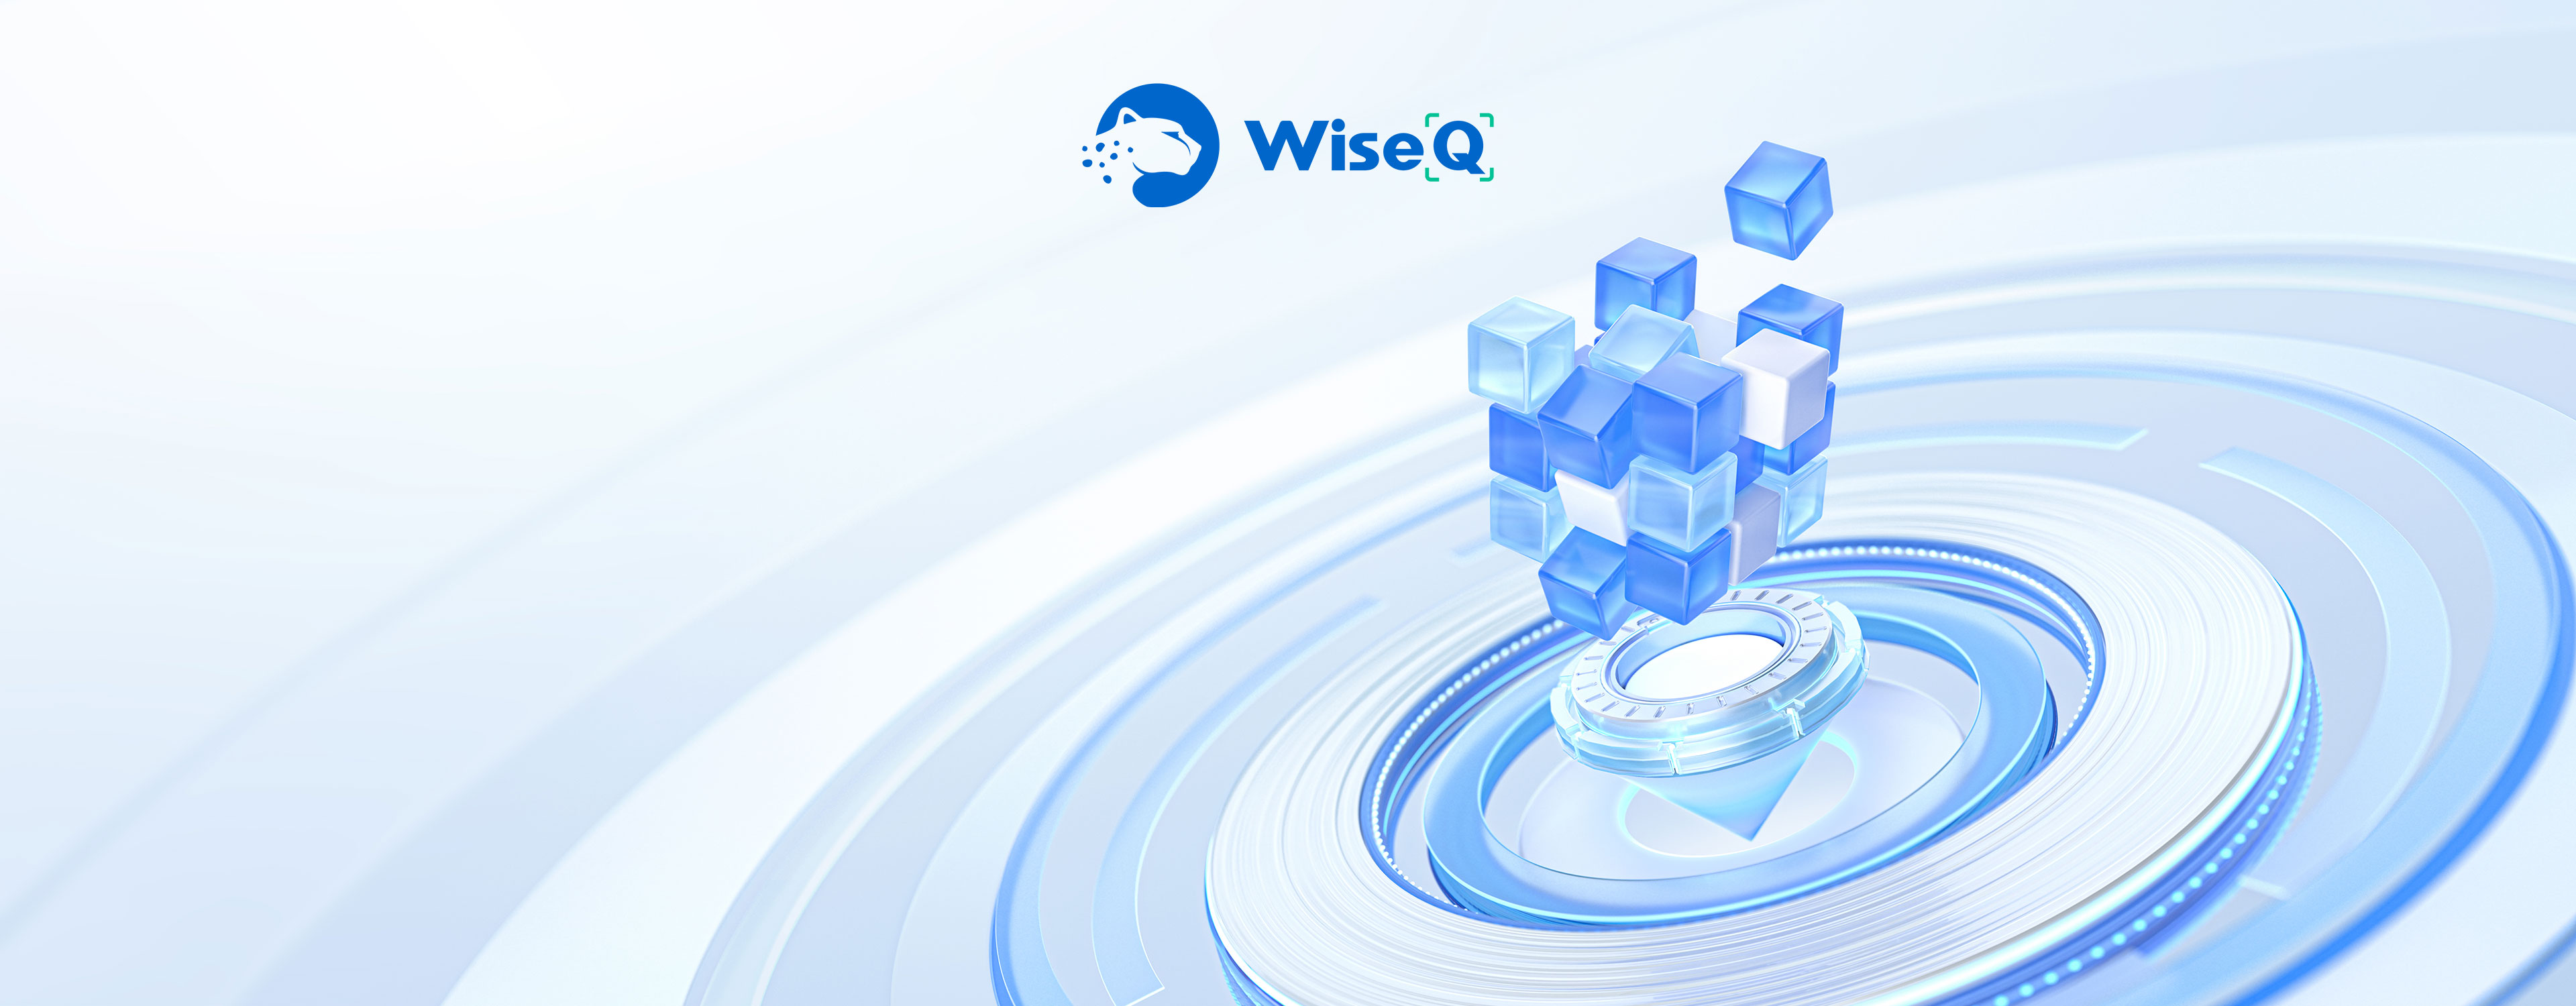 WiseQ- 扫码支付解决方案